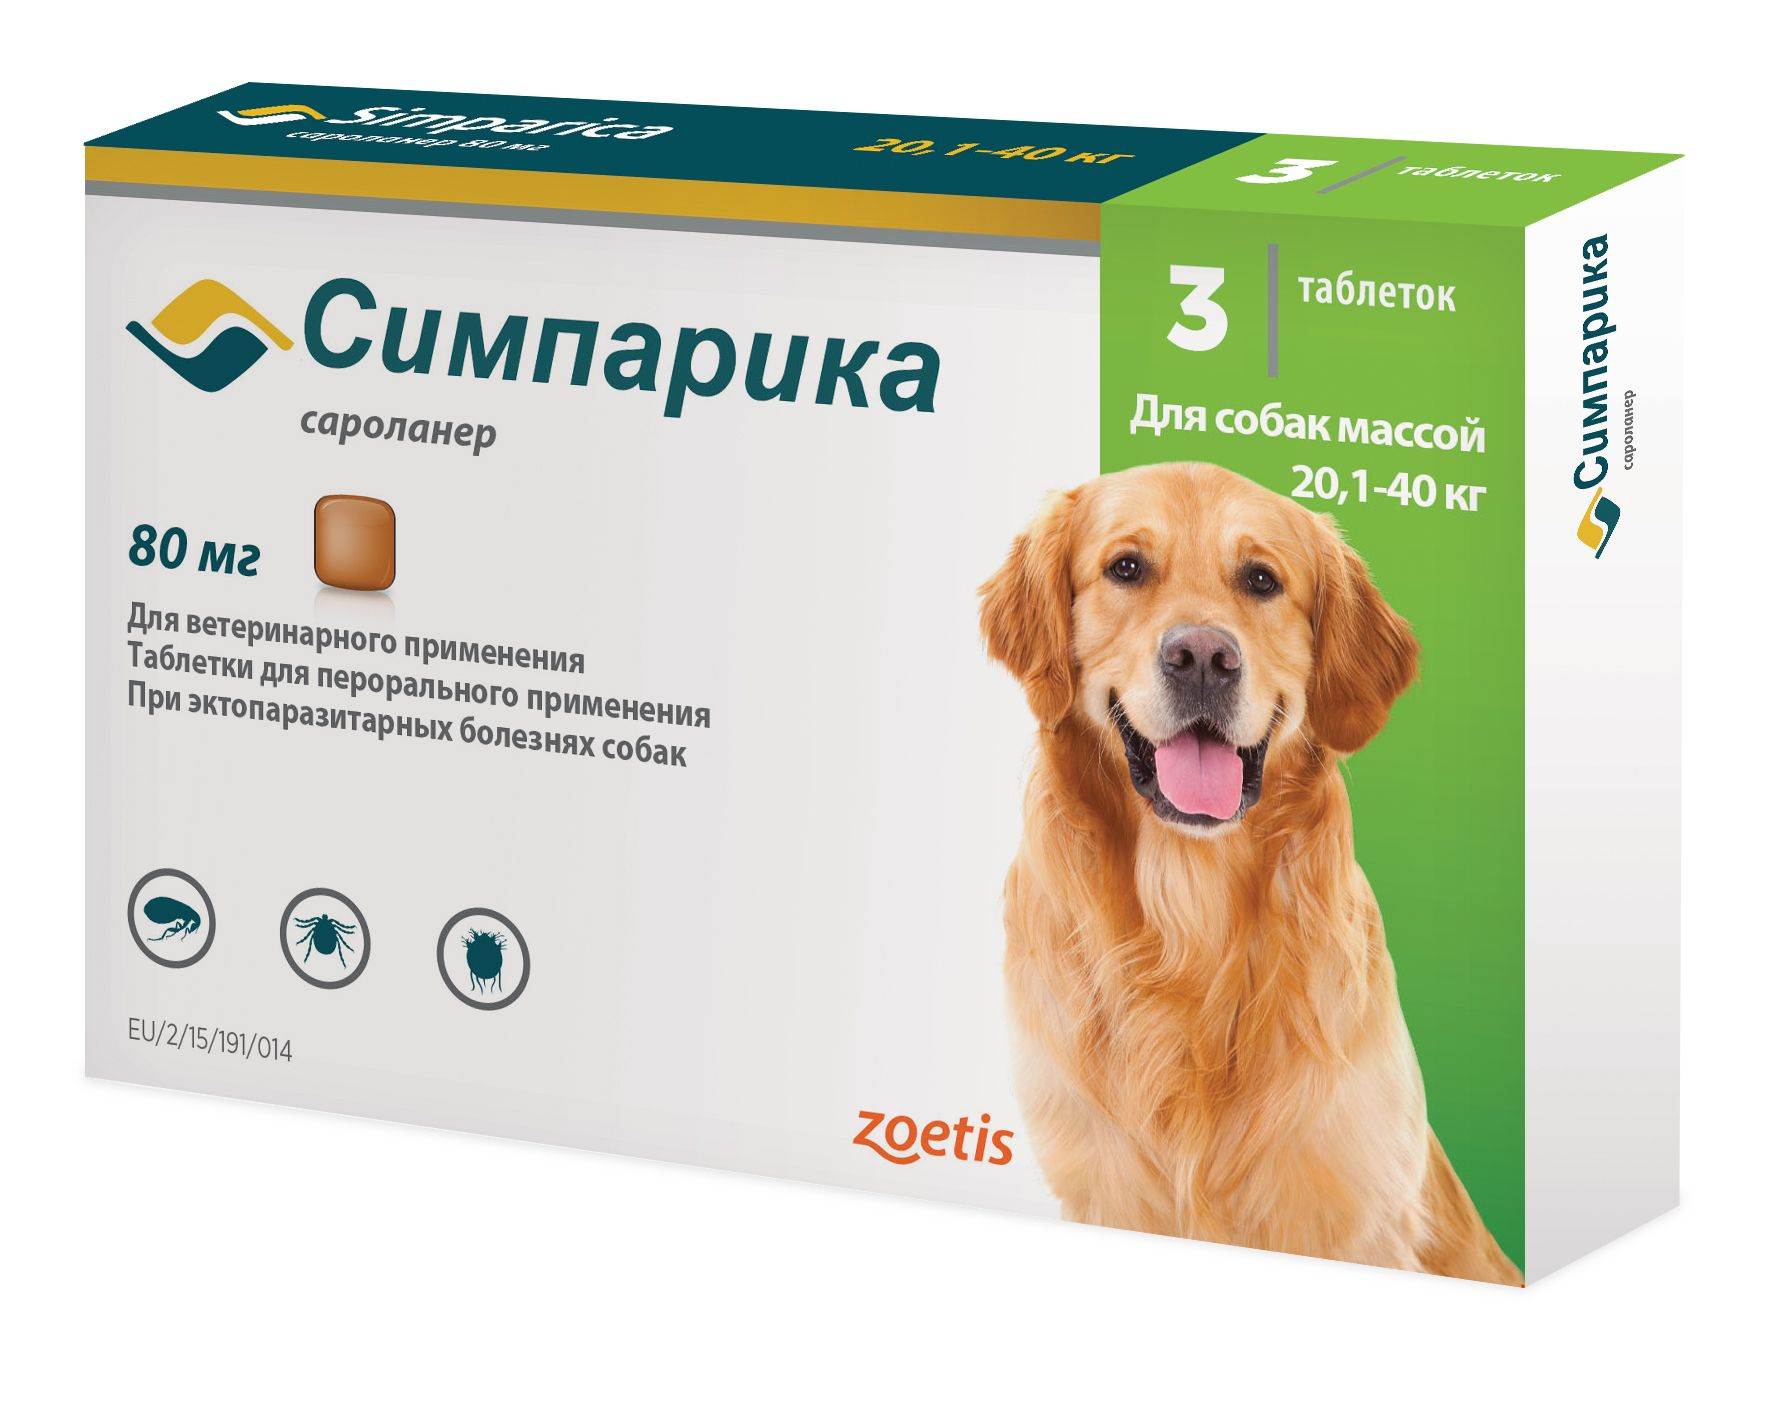 Лекарственные препараты для собак